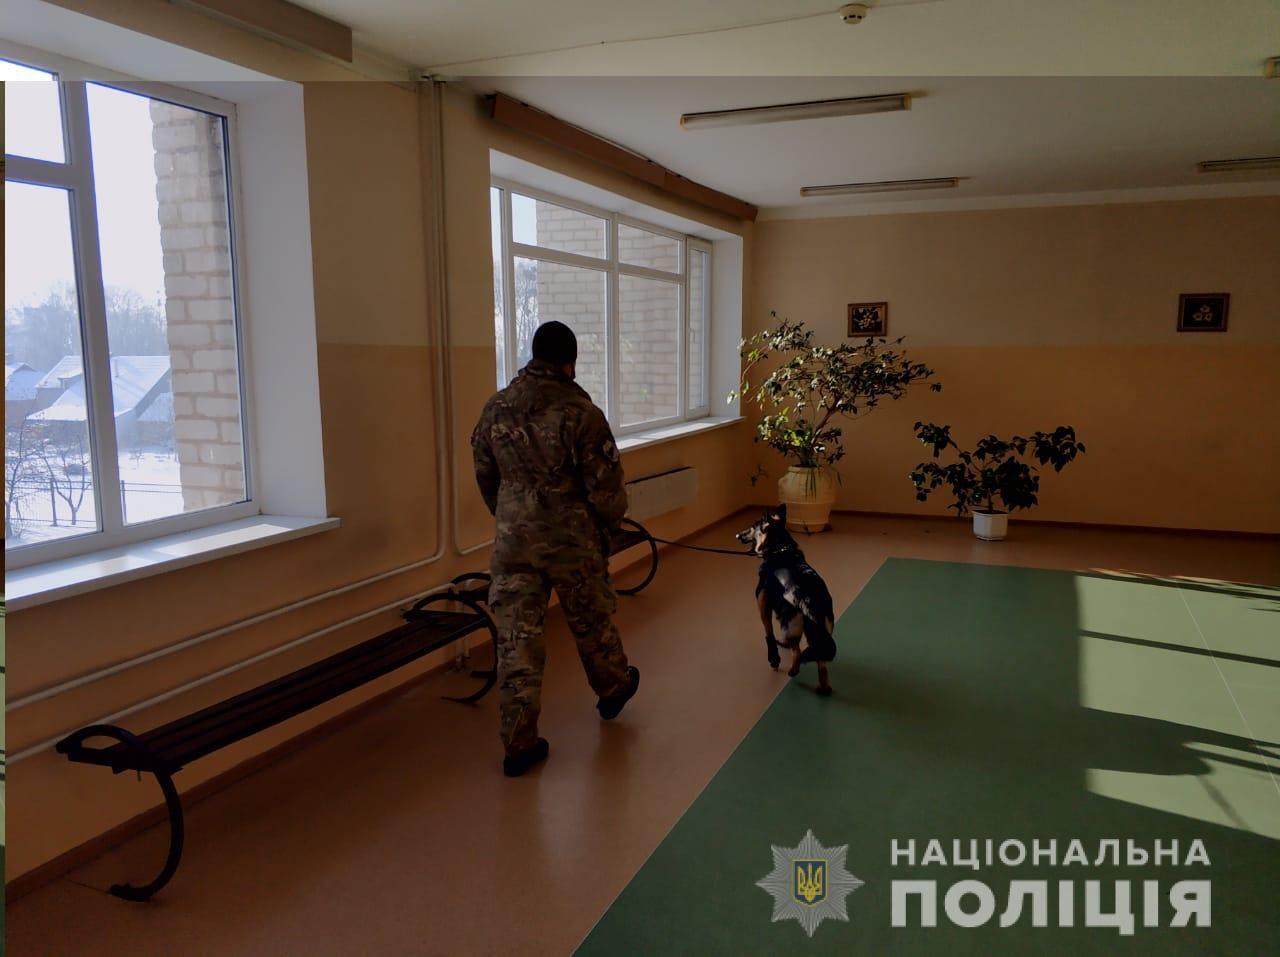 Поліцейські оперативно затримали чоловіка, який повідомив про замінування шести установ в одному з райцентрів Харківщини